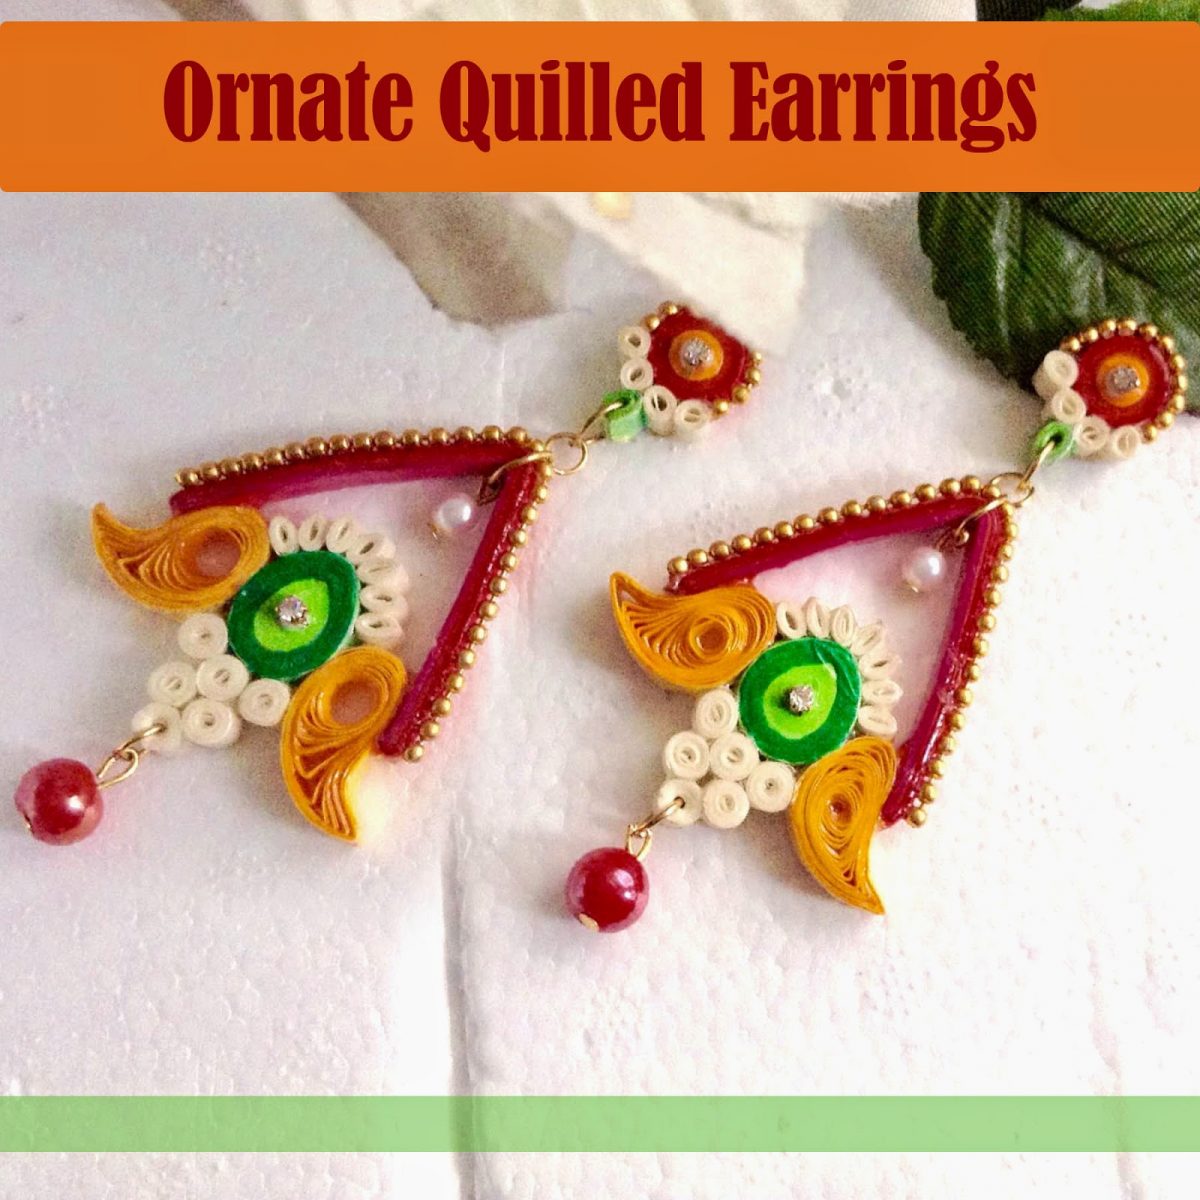 DIY ornate quilled earrings